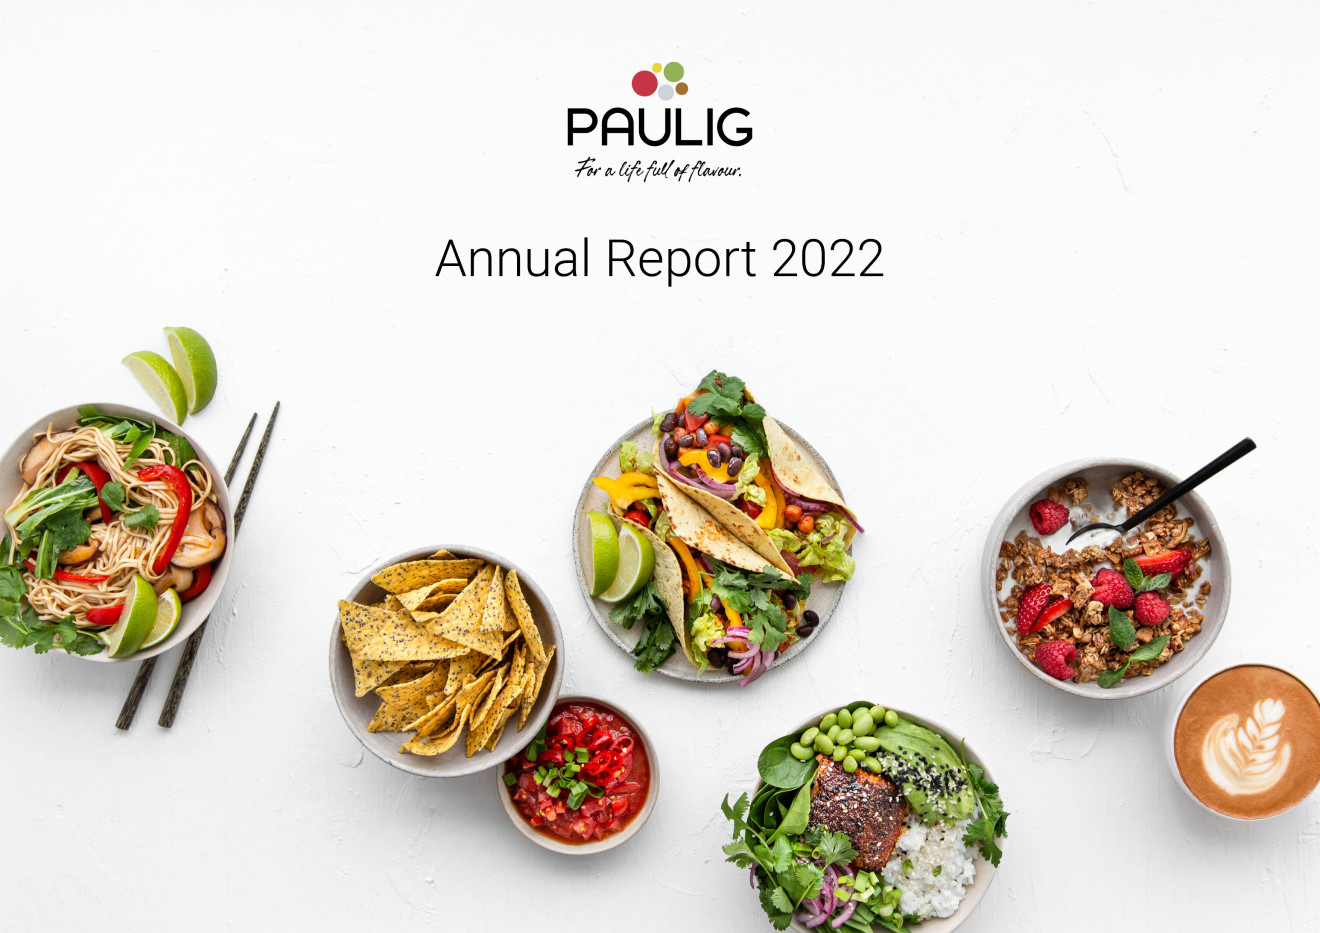 Paulig's Annual Report 2022